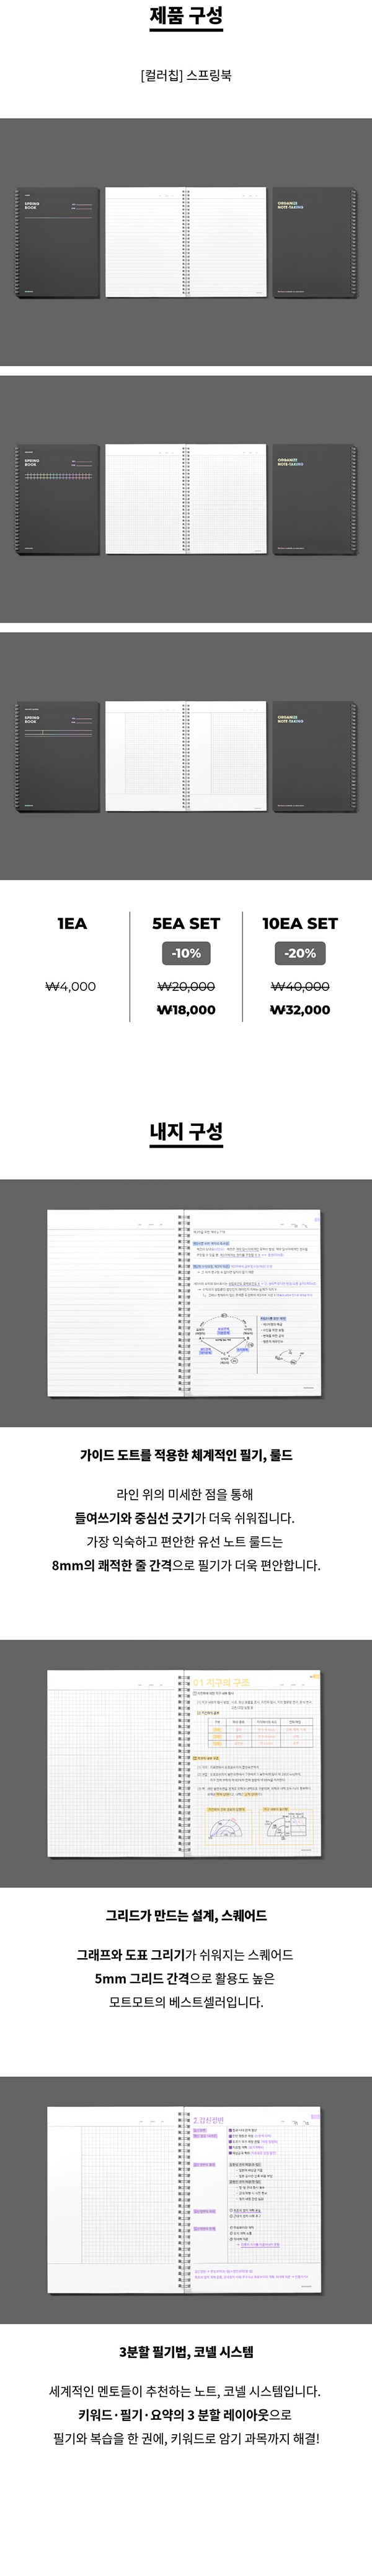 [모트모트] 스프링북 컬러칩 - 다크호스 (코넬시스템)